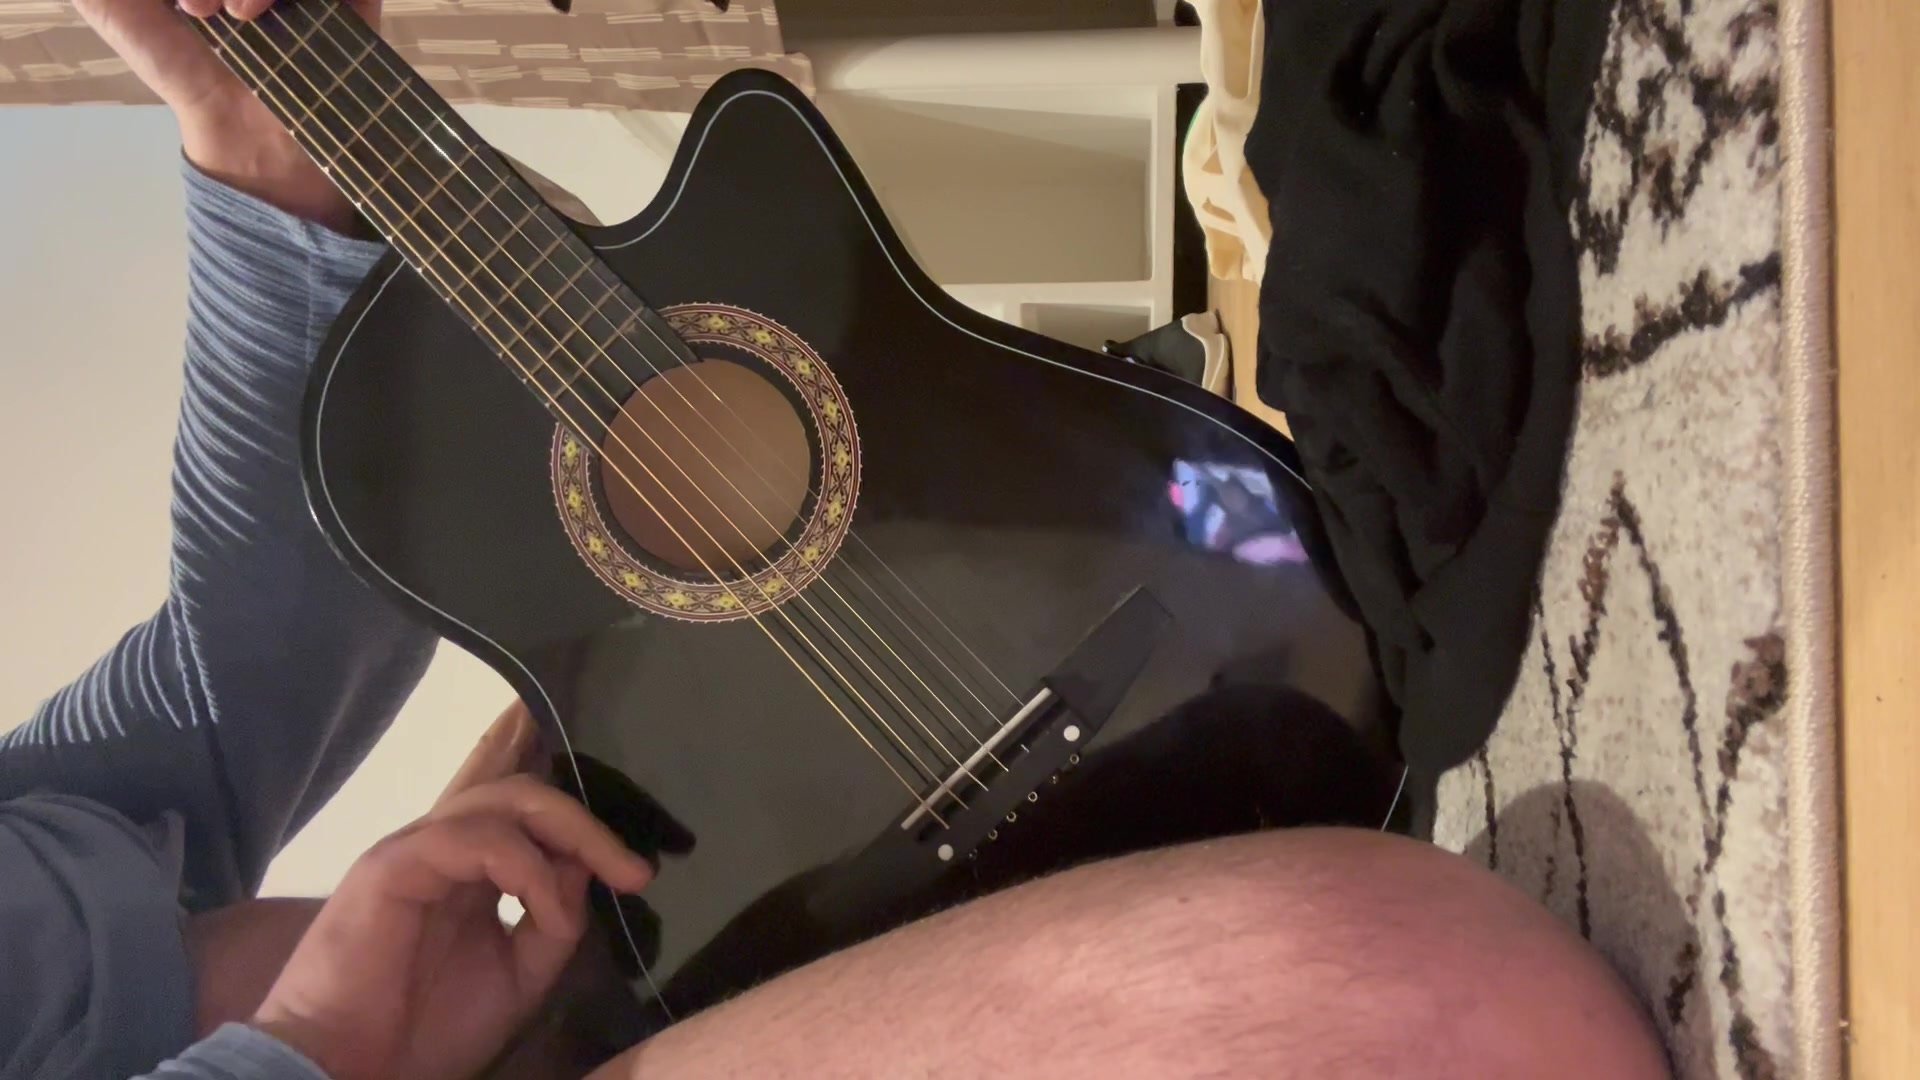 Guitar rubbing + cum